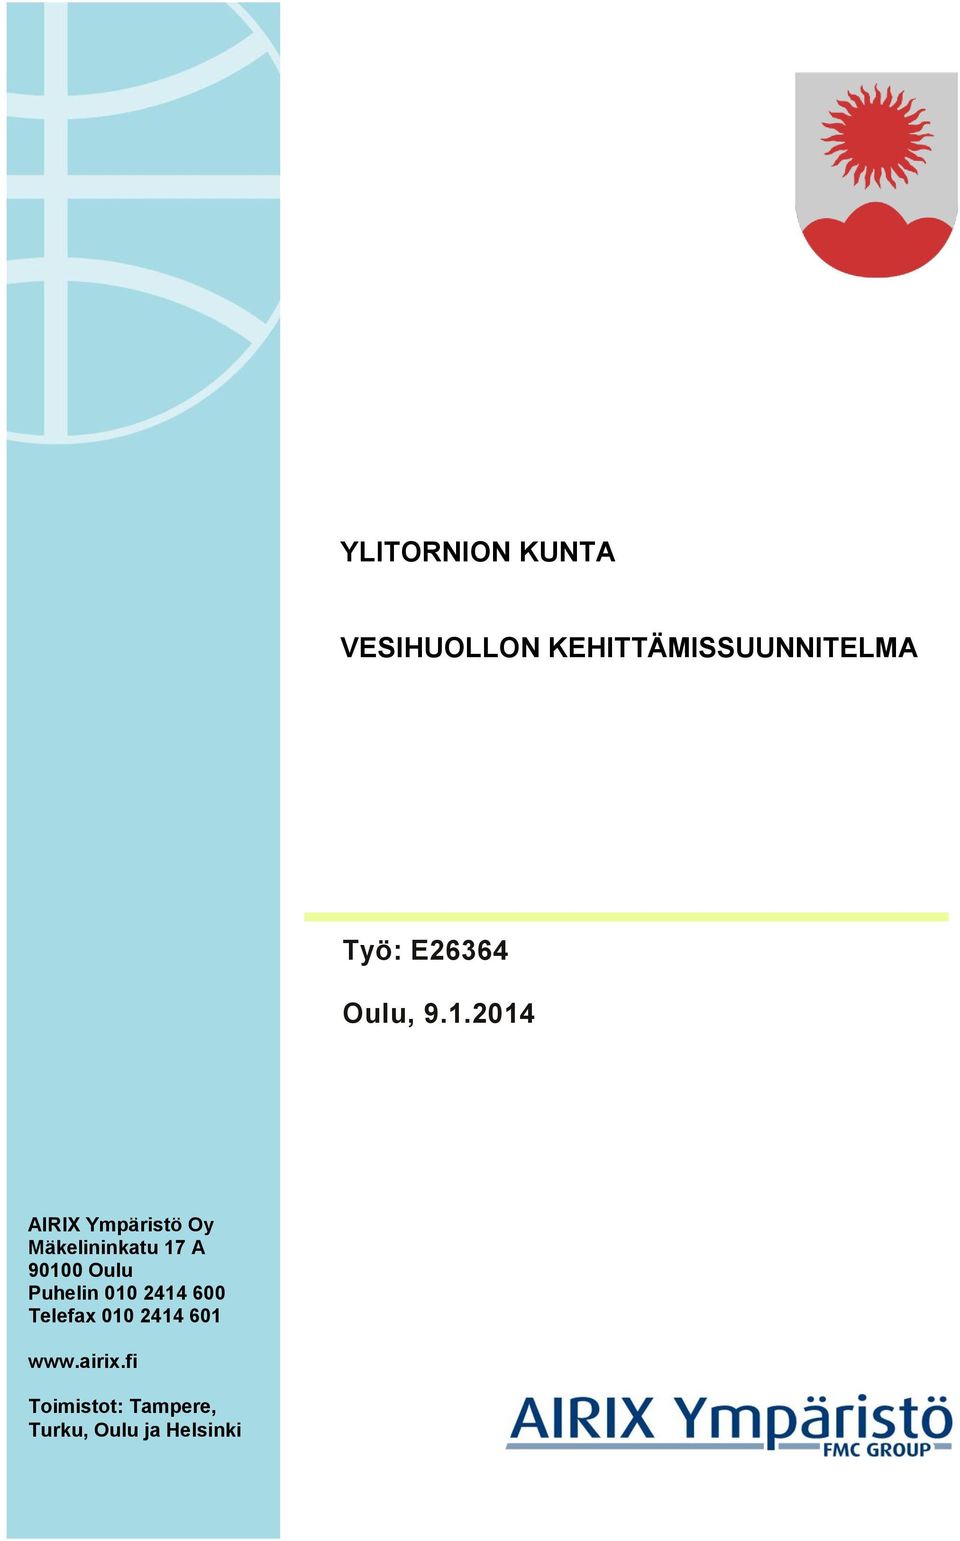 2014 AIRIX Ympäristö Oy Mäkelininkatu 17 A 90100 Oulu